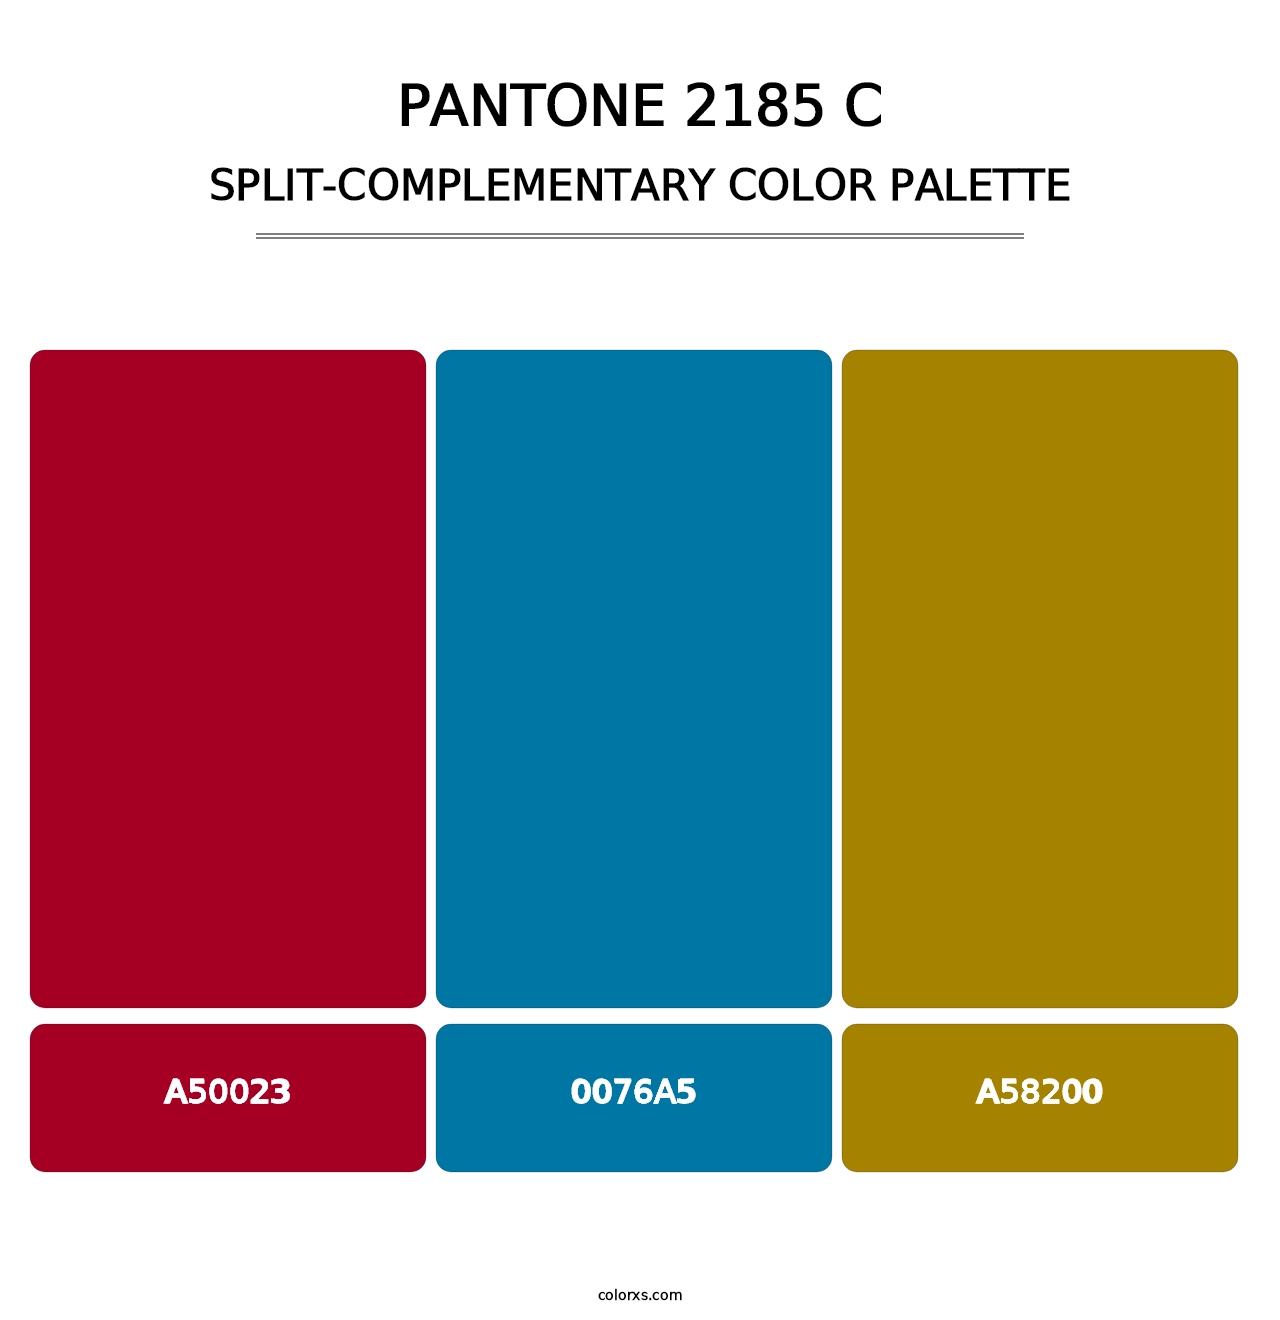 PANTONE 2185 C - Split-Complementary Color Palette